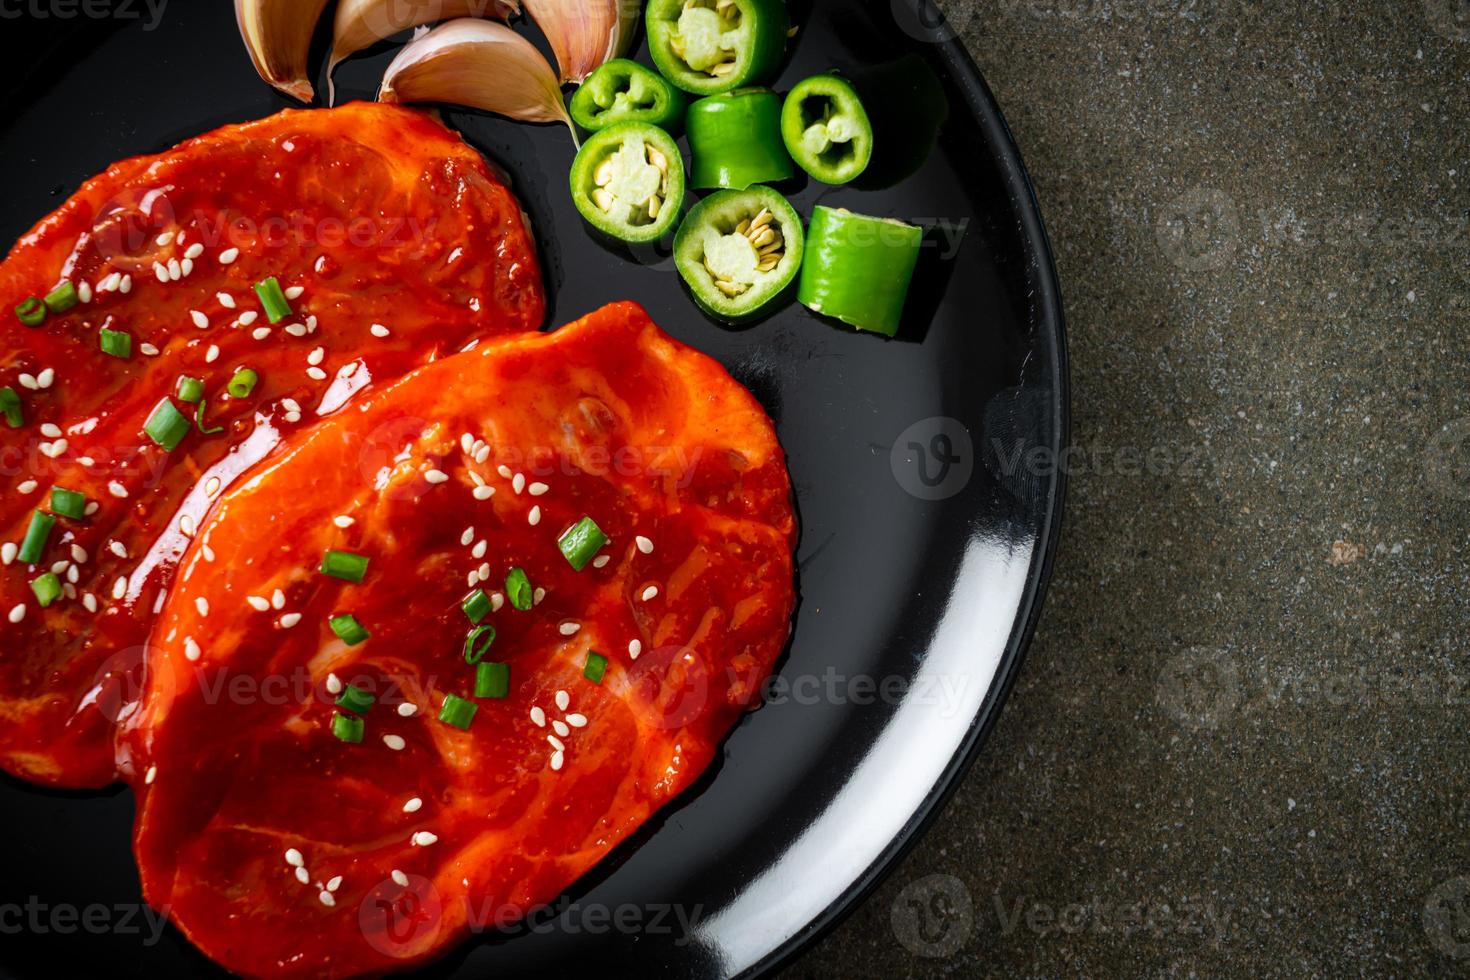 carne de porco marinada coreana ou carne de porco fresca crua marinada com pasta picante coreana foto